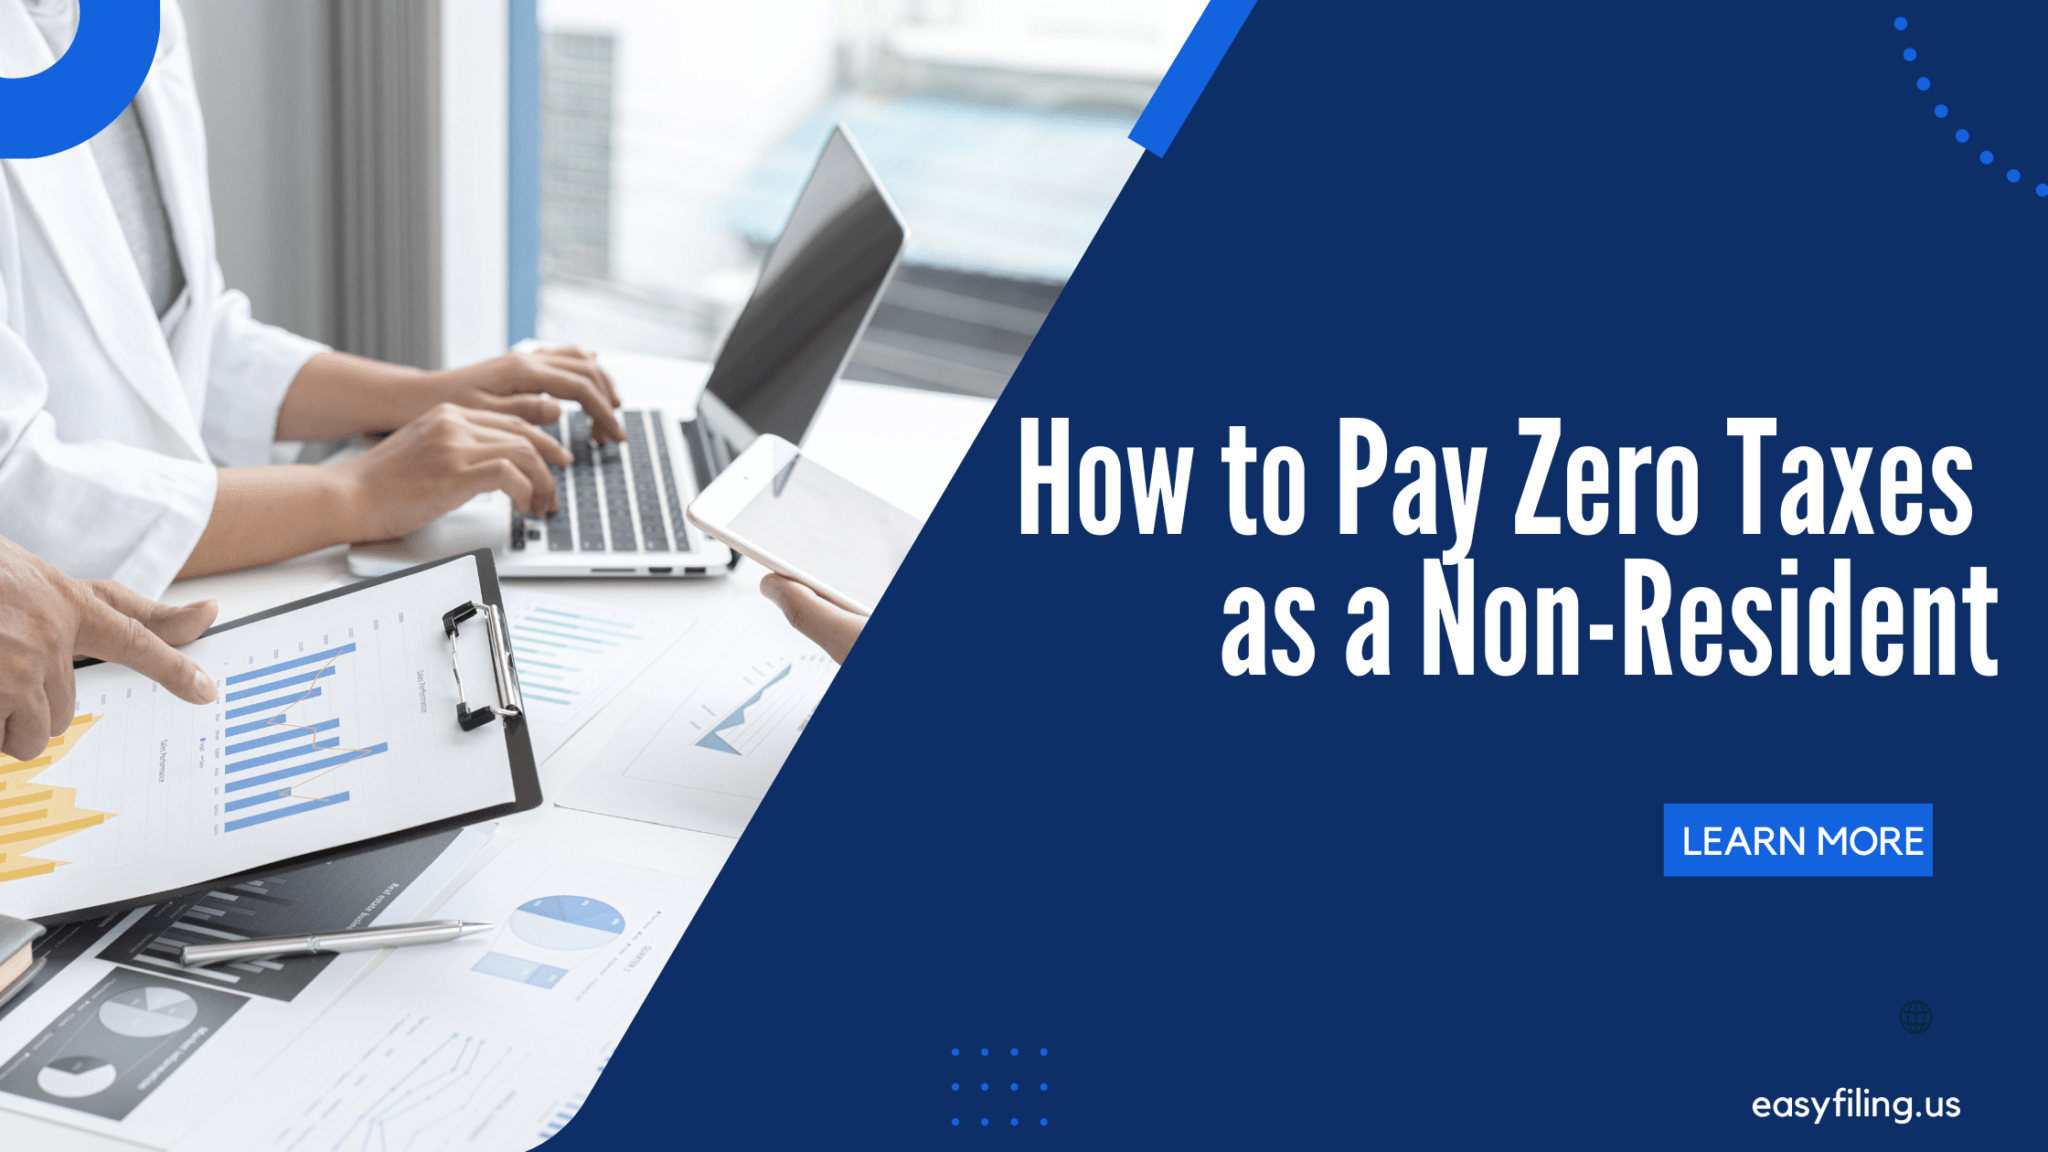 Pay Zero Taxes as a Non-Resident